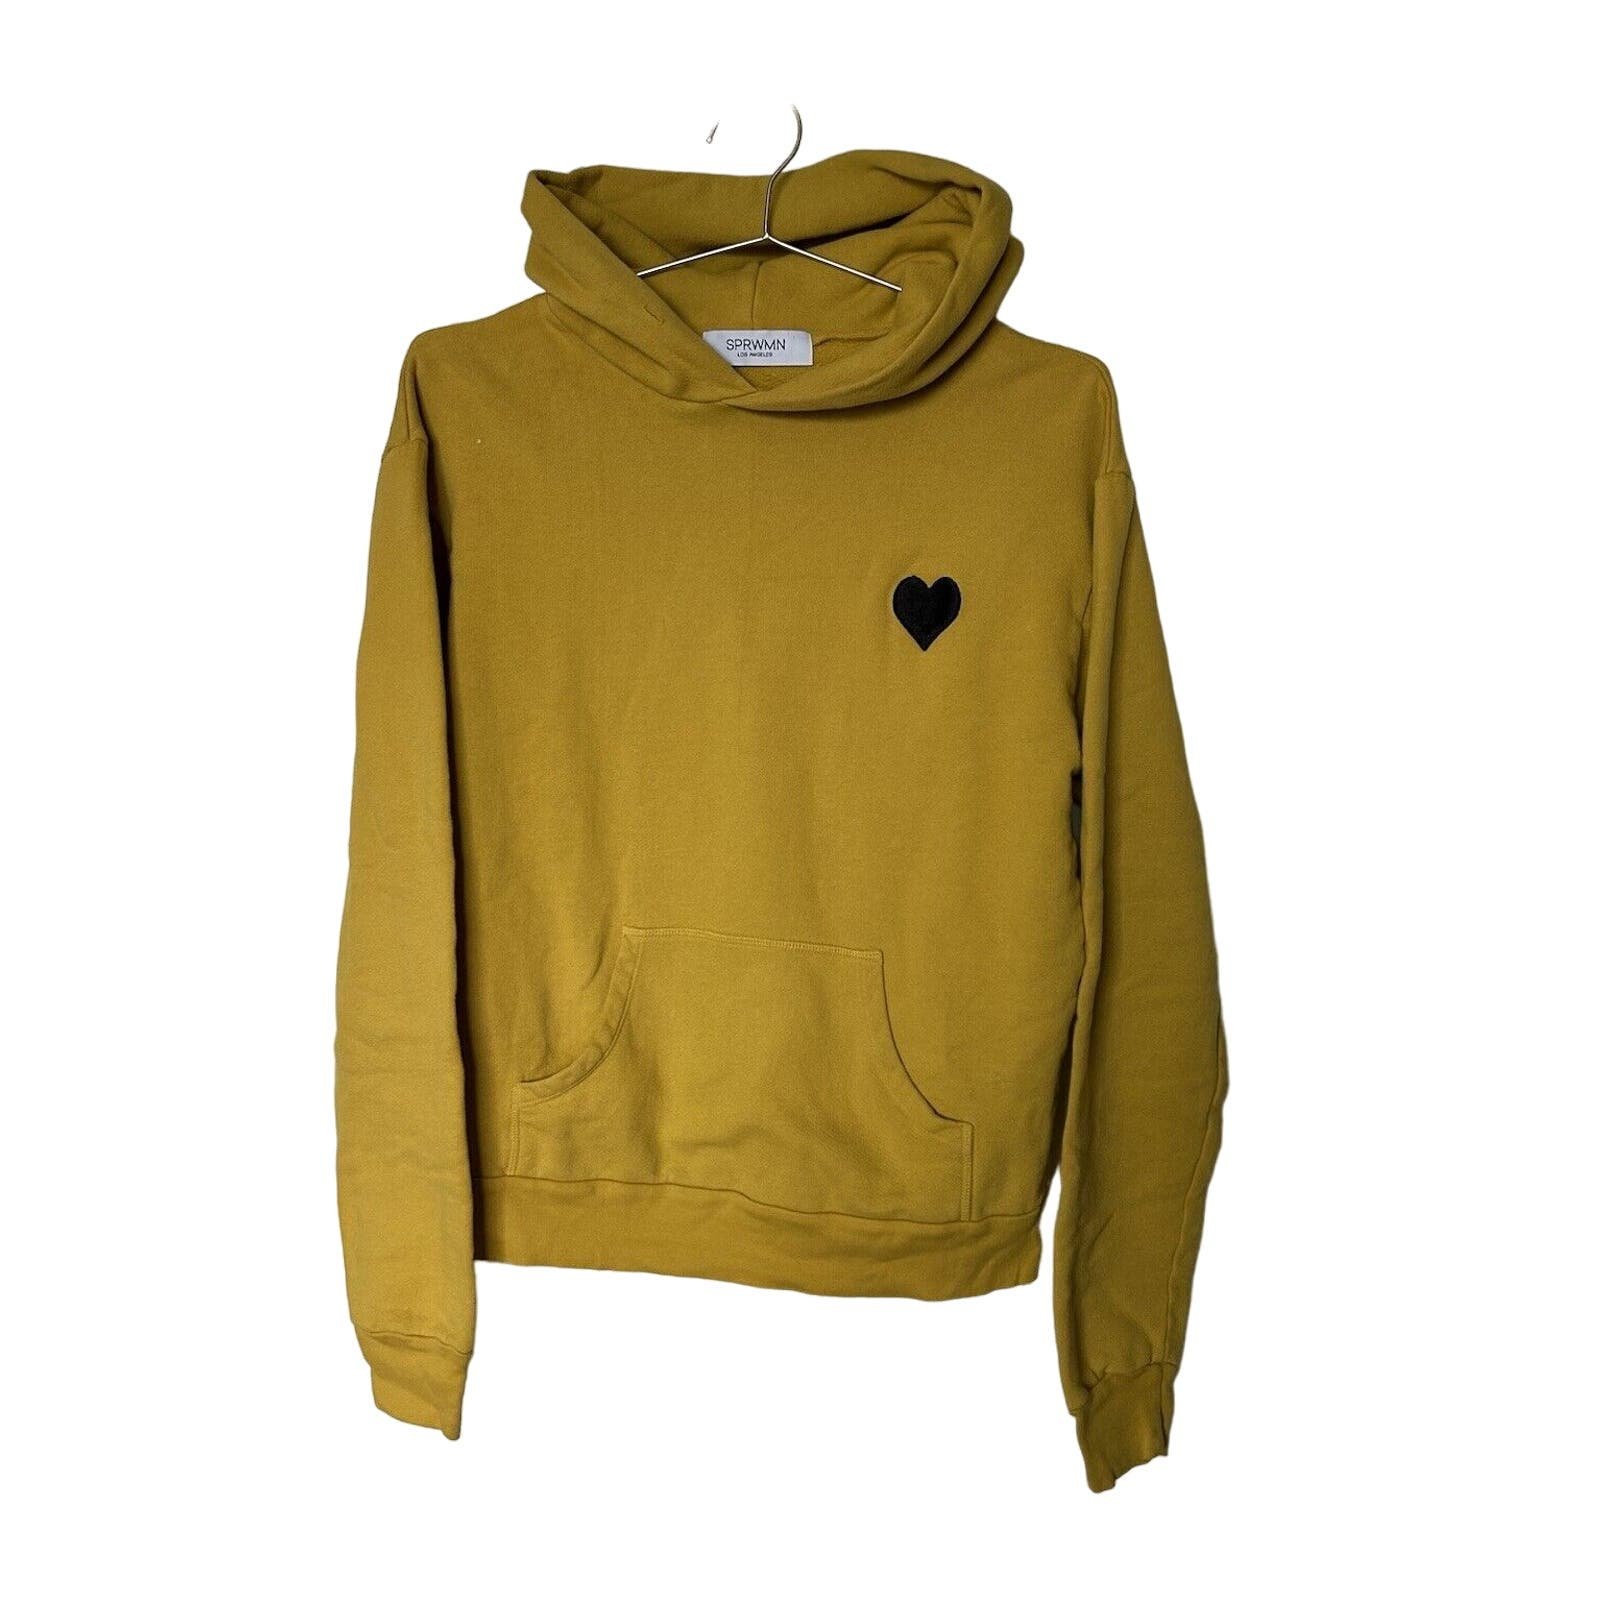 Exclusive SPRWMN Heart Script Hooded Sweatshirt Size S 